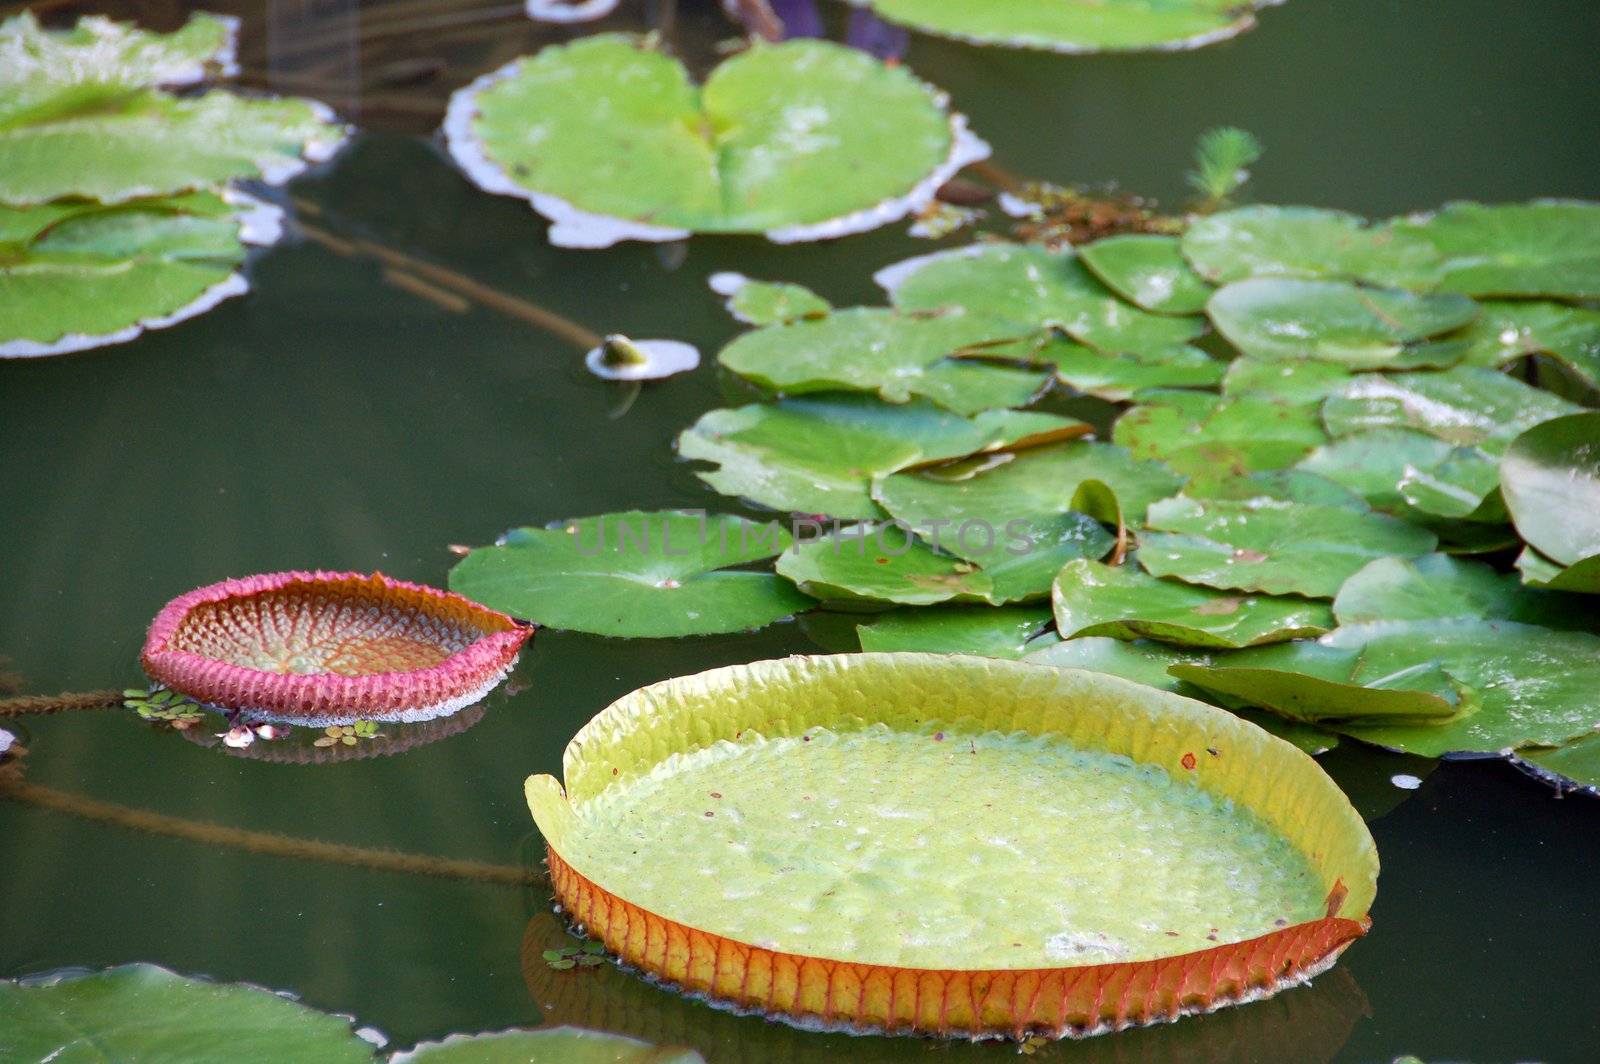 Lotus Leaves in pond by nikonite